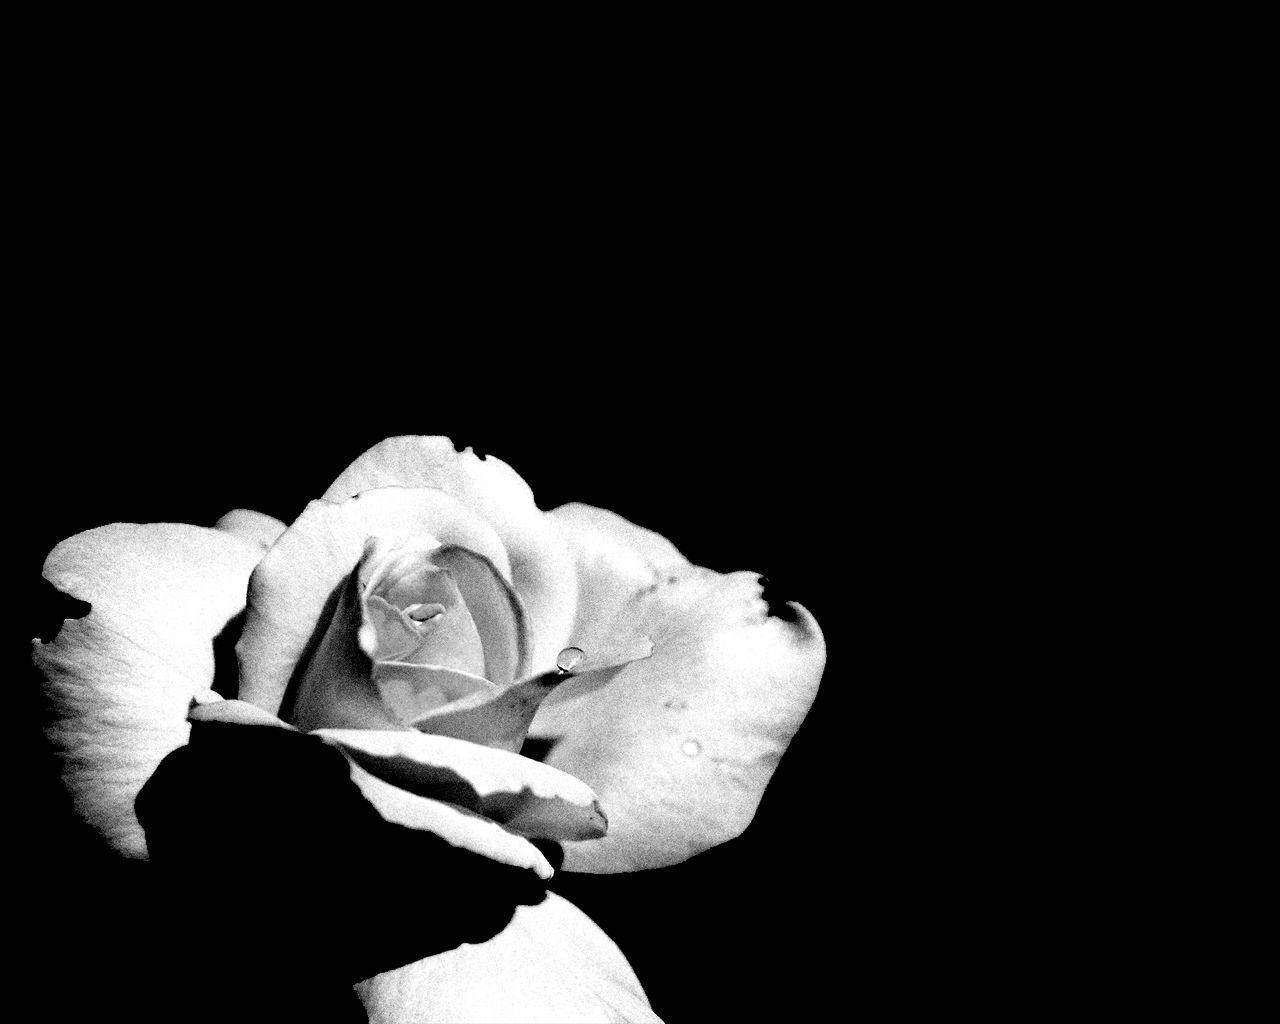 Fondode Pantalla Negro Y Blanco Con Una Rosa En Un Ambiente Oscuro. Fondo de pantalla